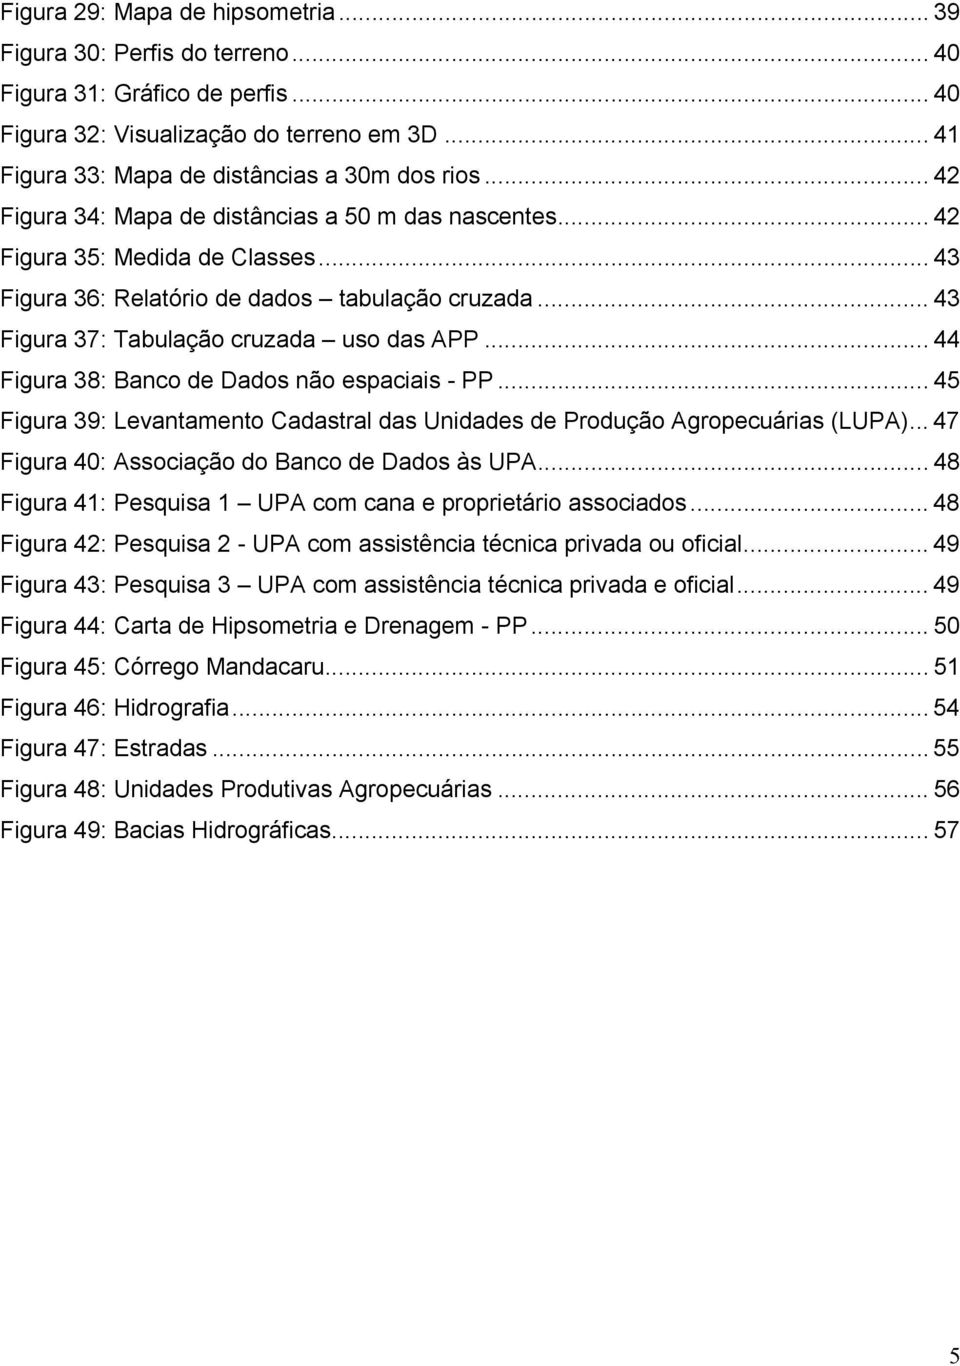 .. 44 Figura 38: Banco de Dados não espaciais - PP... 45 Figura 39: Levantamento Cadastral das Unidades de Produção Agropecuárias (LUPA)... 47 Figura 40: Associação do Banco de Dados às UPA.